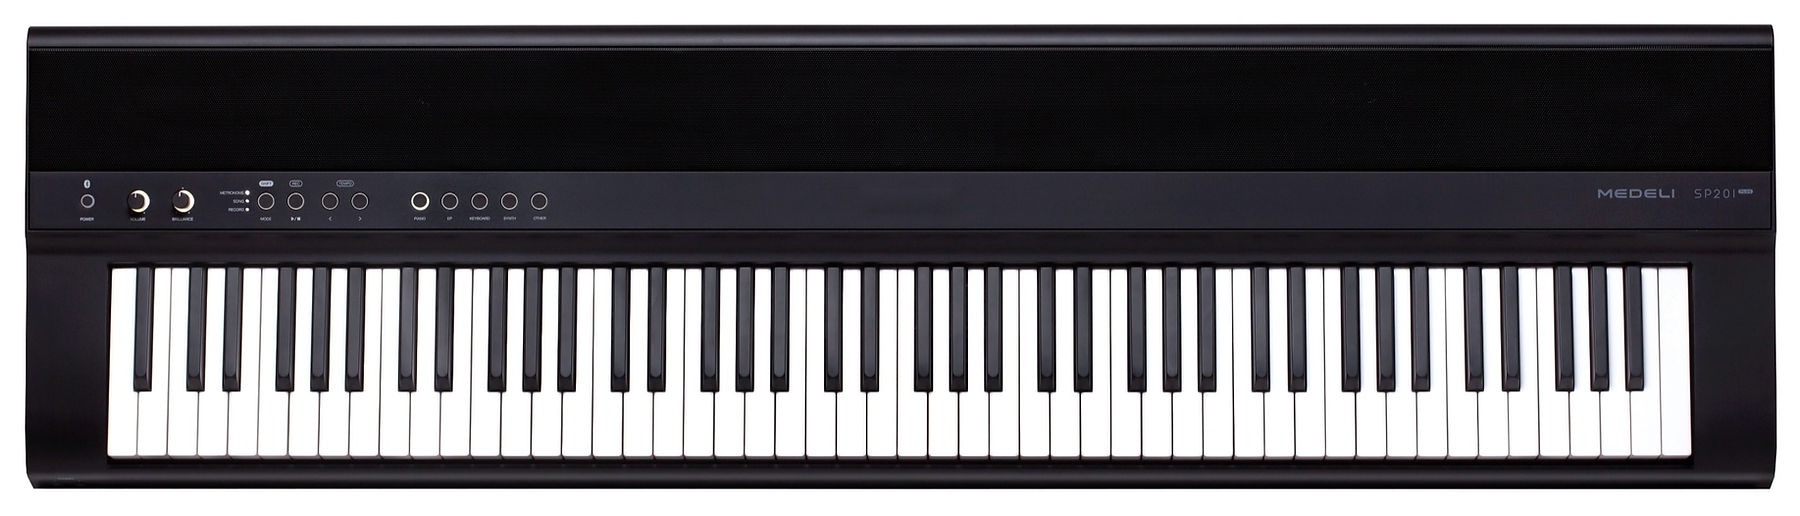 Цифровые пианино Medeli SP201 Plus портативный кремния 61 ключи roll up пианино электронные midi клавиатура со встроенным громкоговоритель